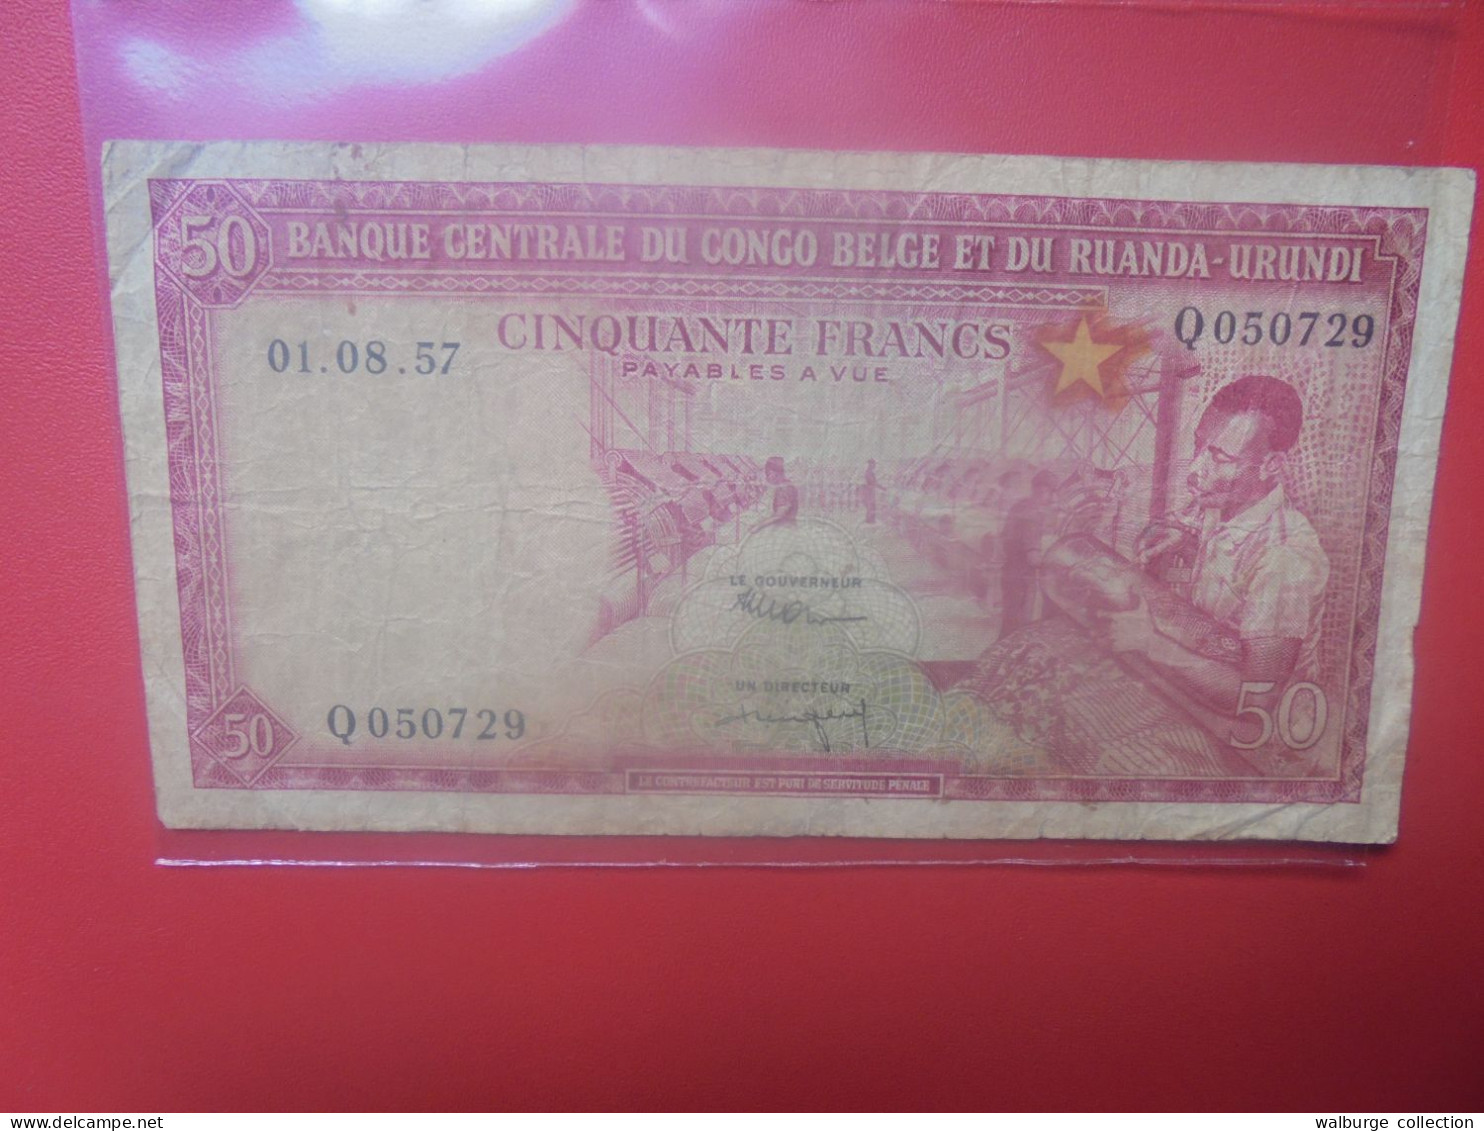 CONGO BELGE 50 FRANCS 1-8-57 Circuler (B.33) - Belgian Congo Bank